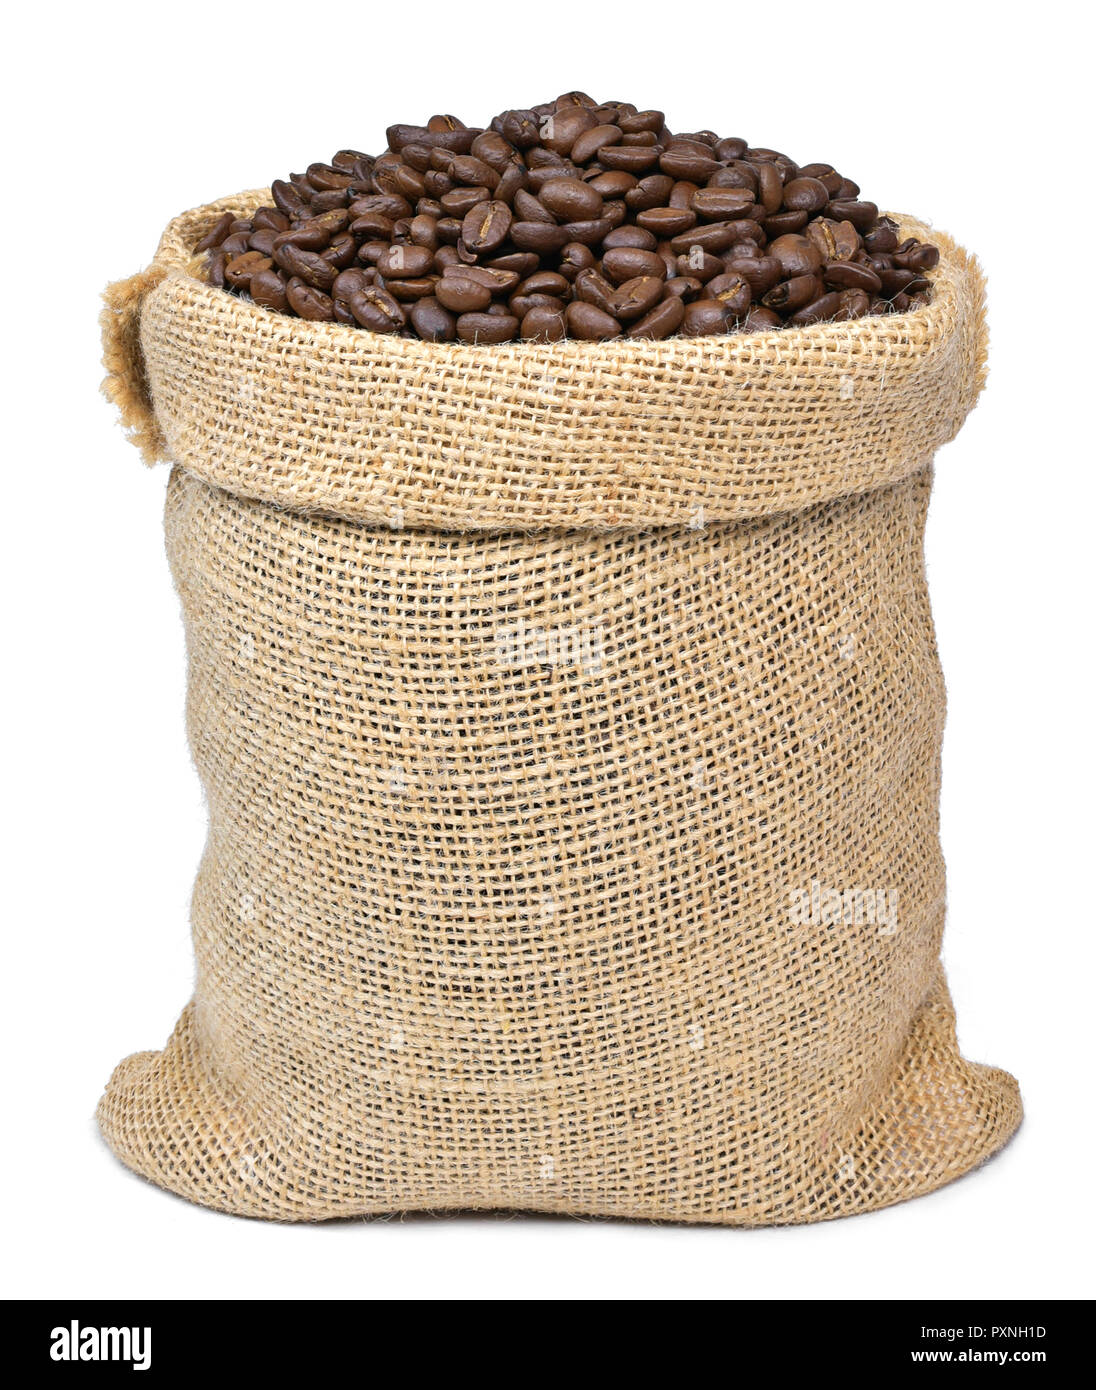 Geröstete Kaffeebohnen in einem sackleinen Sack. Sack Sack mit Kaffeebohnen, auf weißem Hintergrund. Kaffee exportieren. Stockfoto